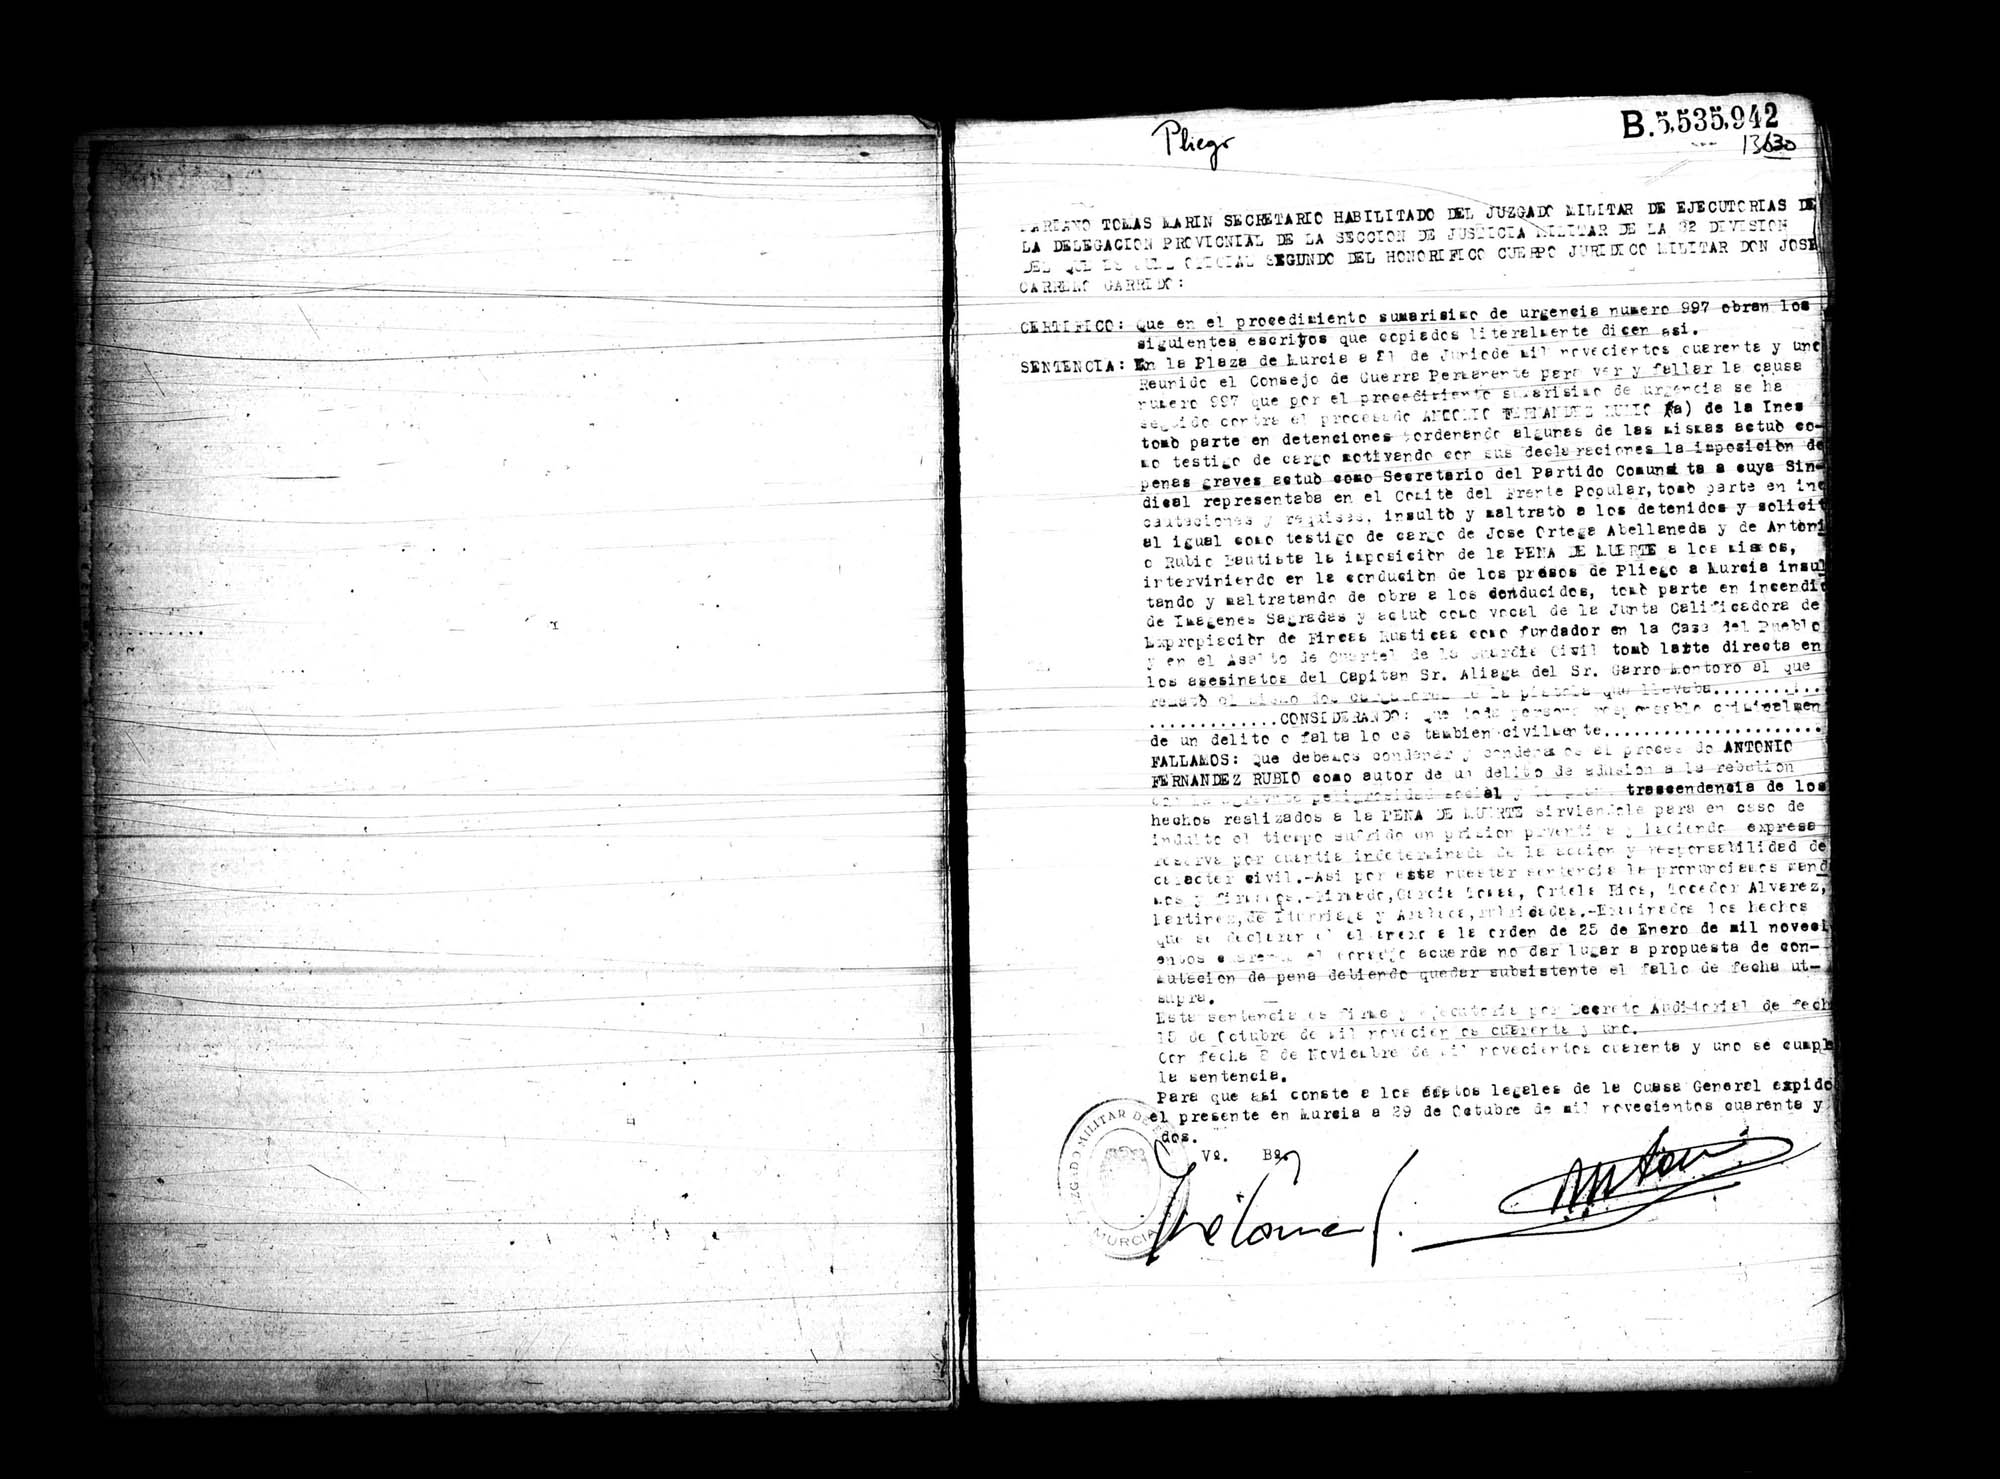 Certificado de la sentencia pronunciada contra Antonio Fernández Rubio, causa 997, el 21 de junio de 1941 en Murcia.